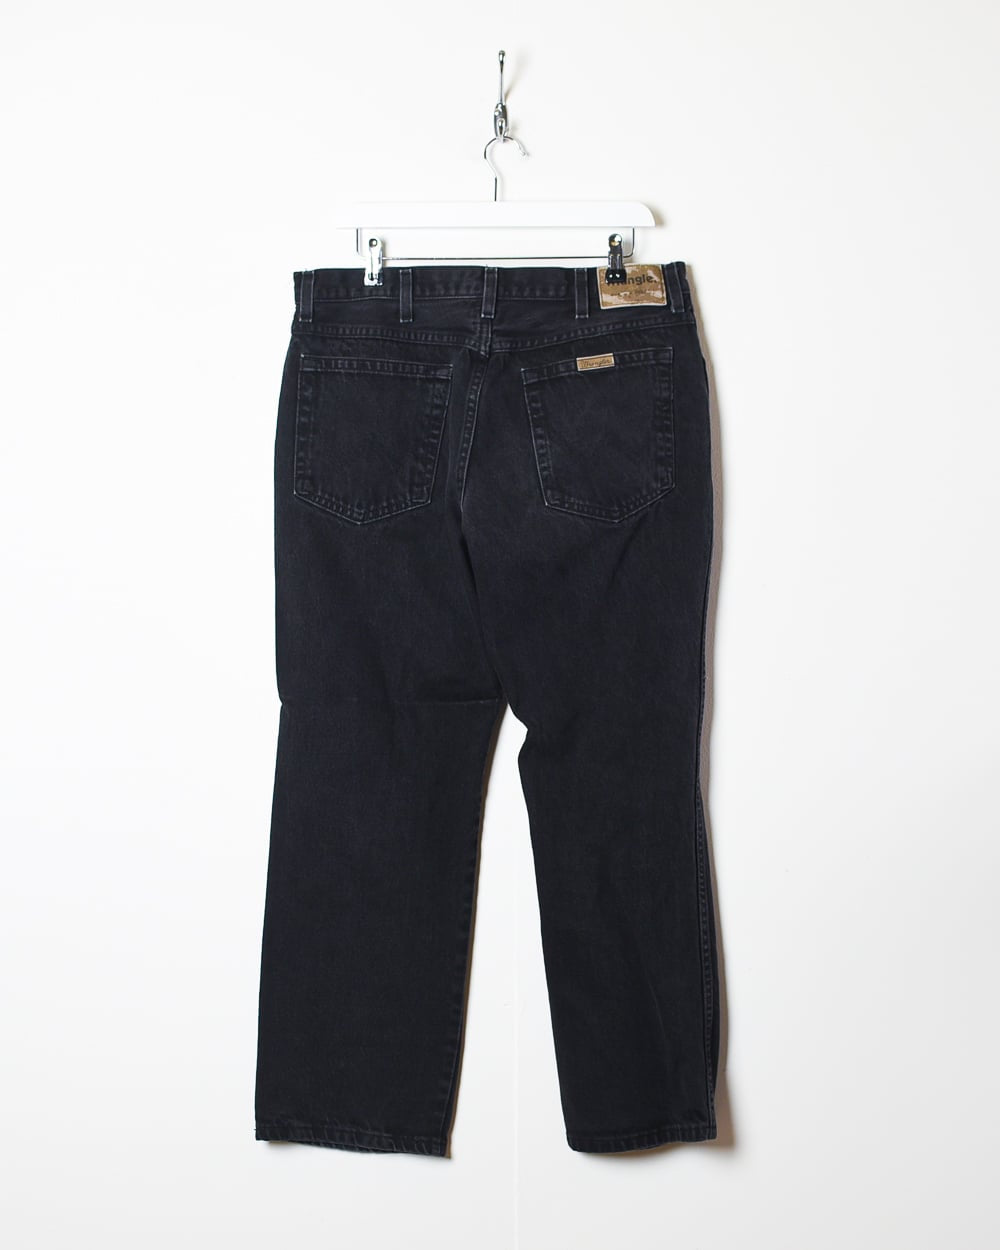 Black Wrangler Jeans - W35 L28